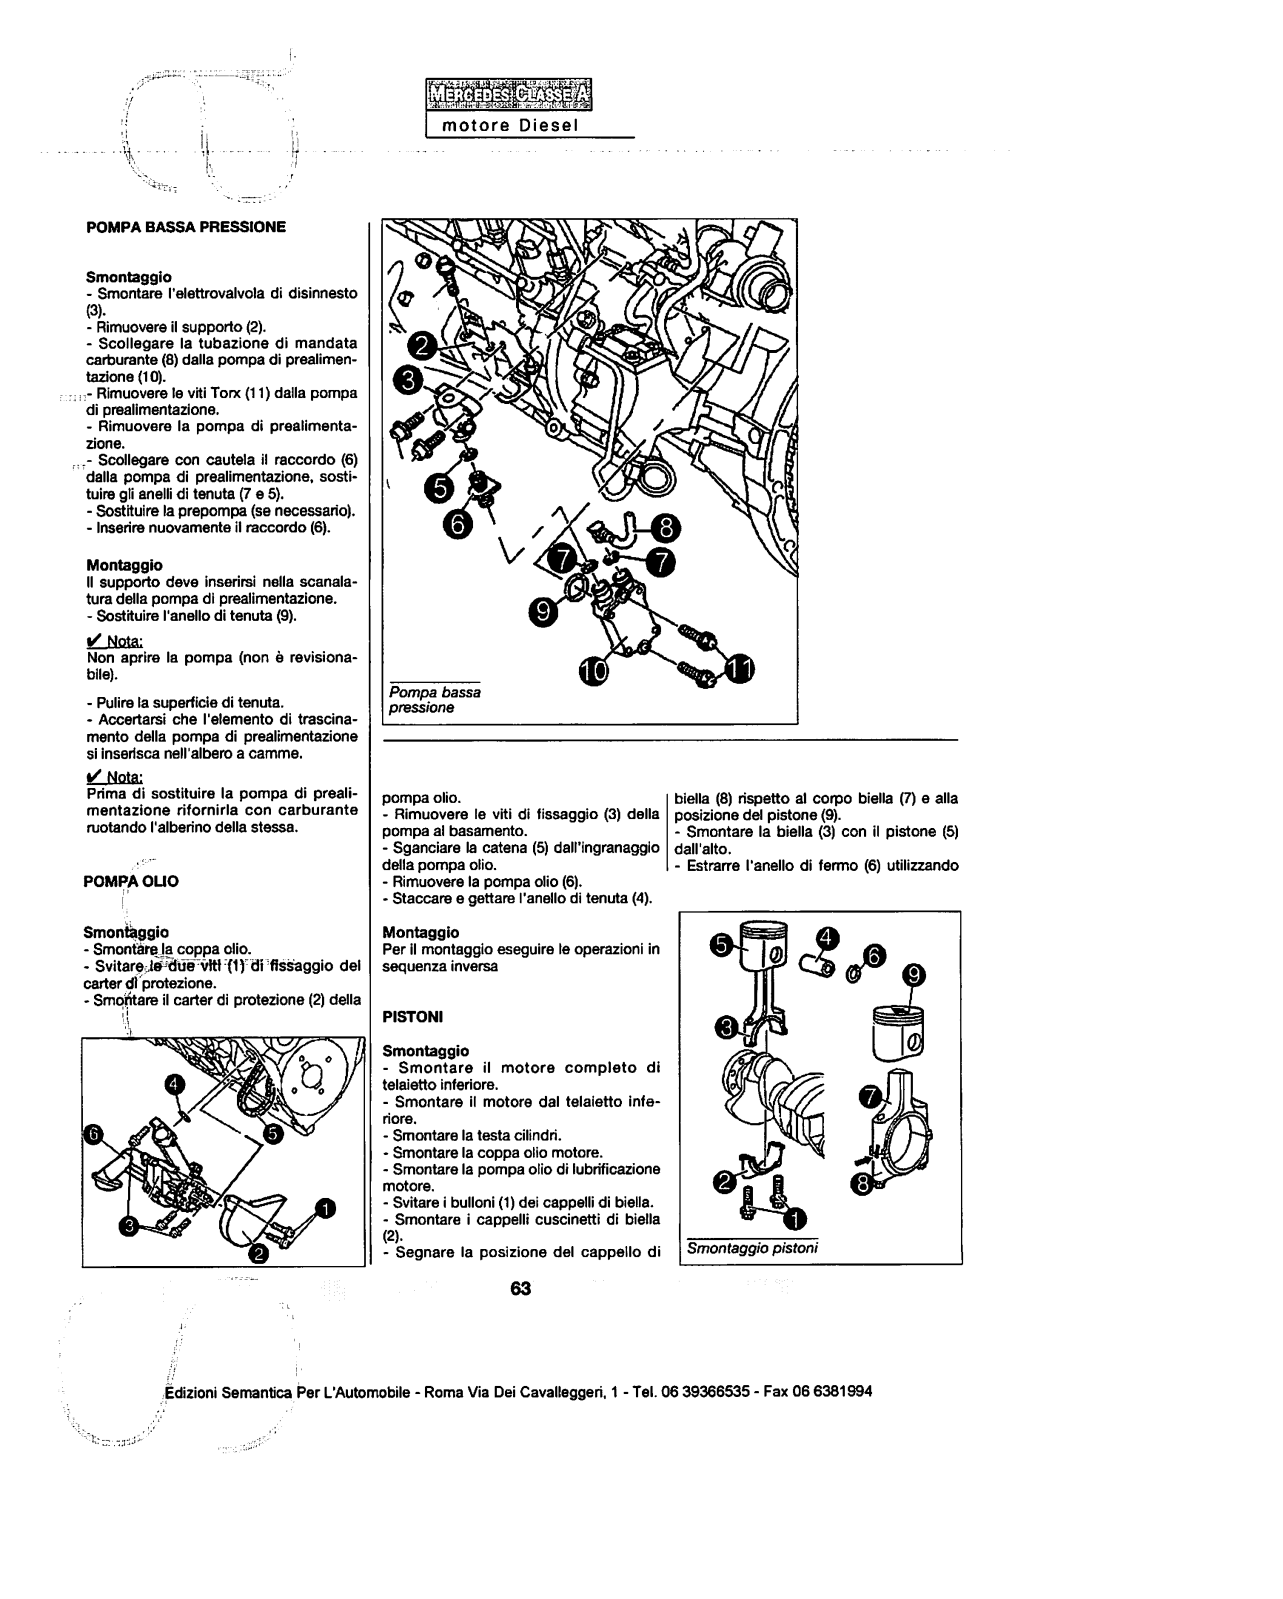 (W168): Manual técnico - tudo sobre - 1997 a 2004 - italiano 2ez5o9v